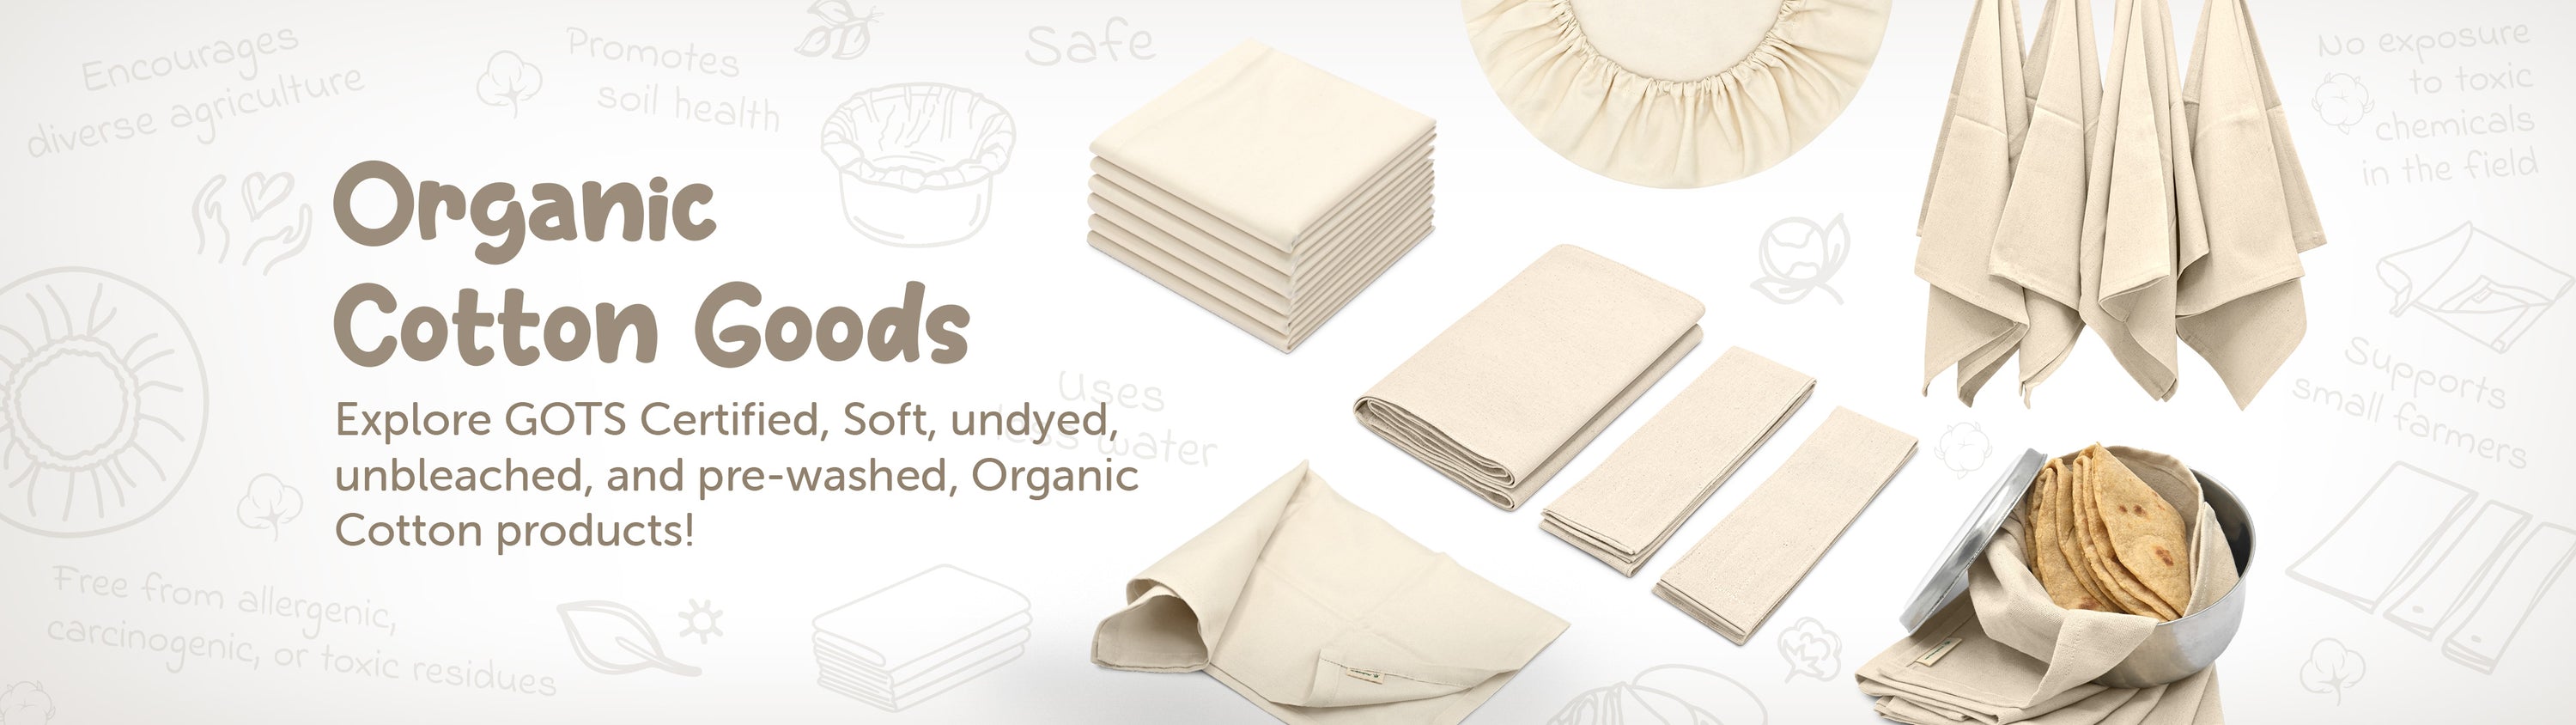 organic cotton goods